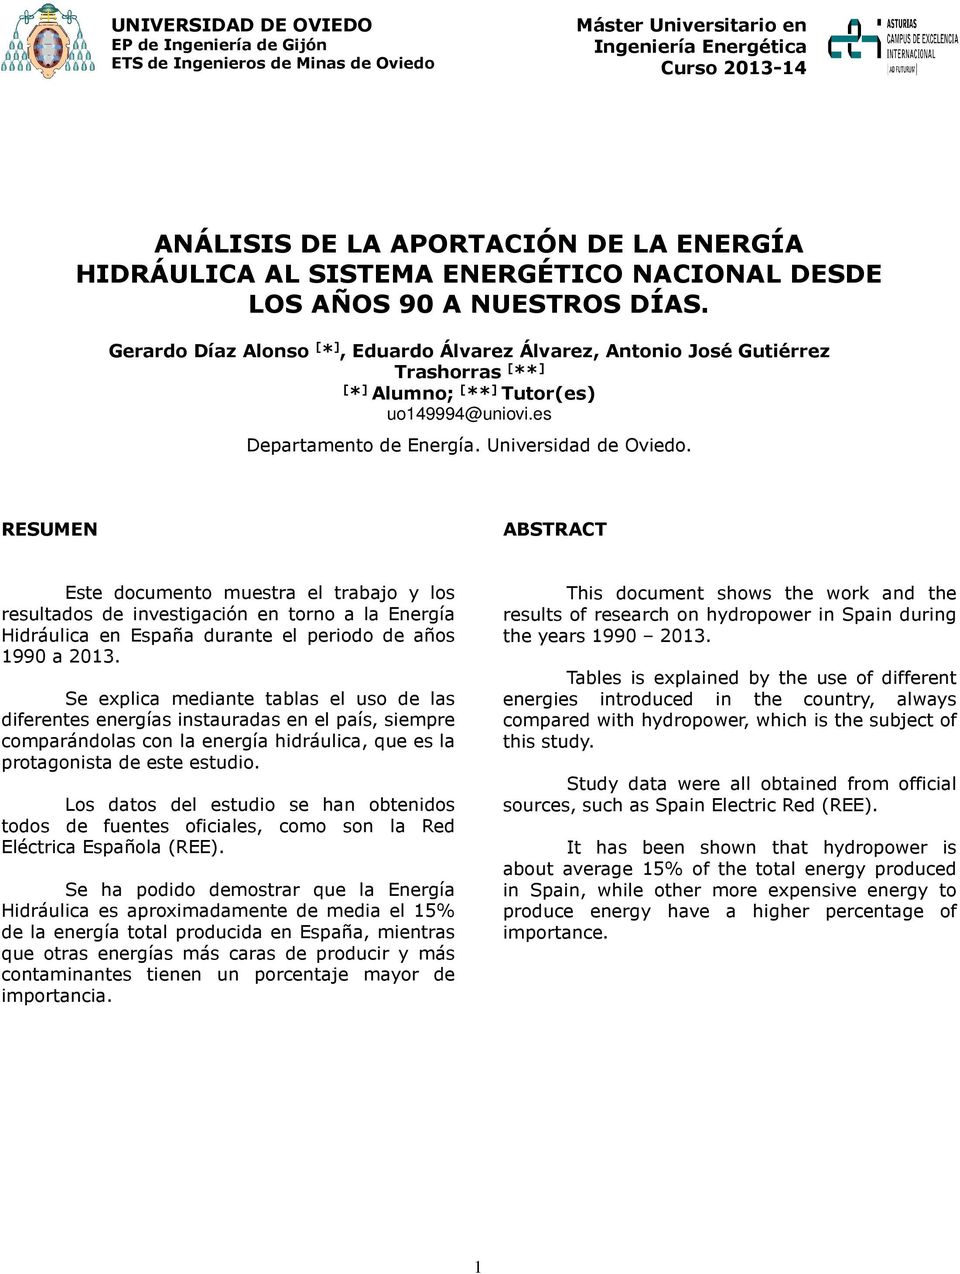 RESUMEN ABSTRACT Este documento muestra el trabajo y los resultados de investigación en torno a la Energía Hidráulica en España durante el periodo de años 1990 a 2013.